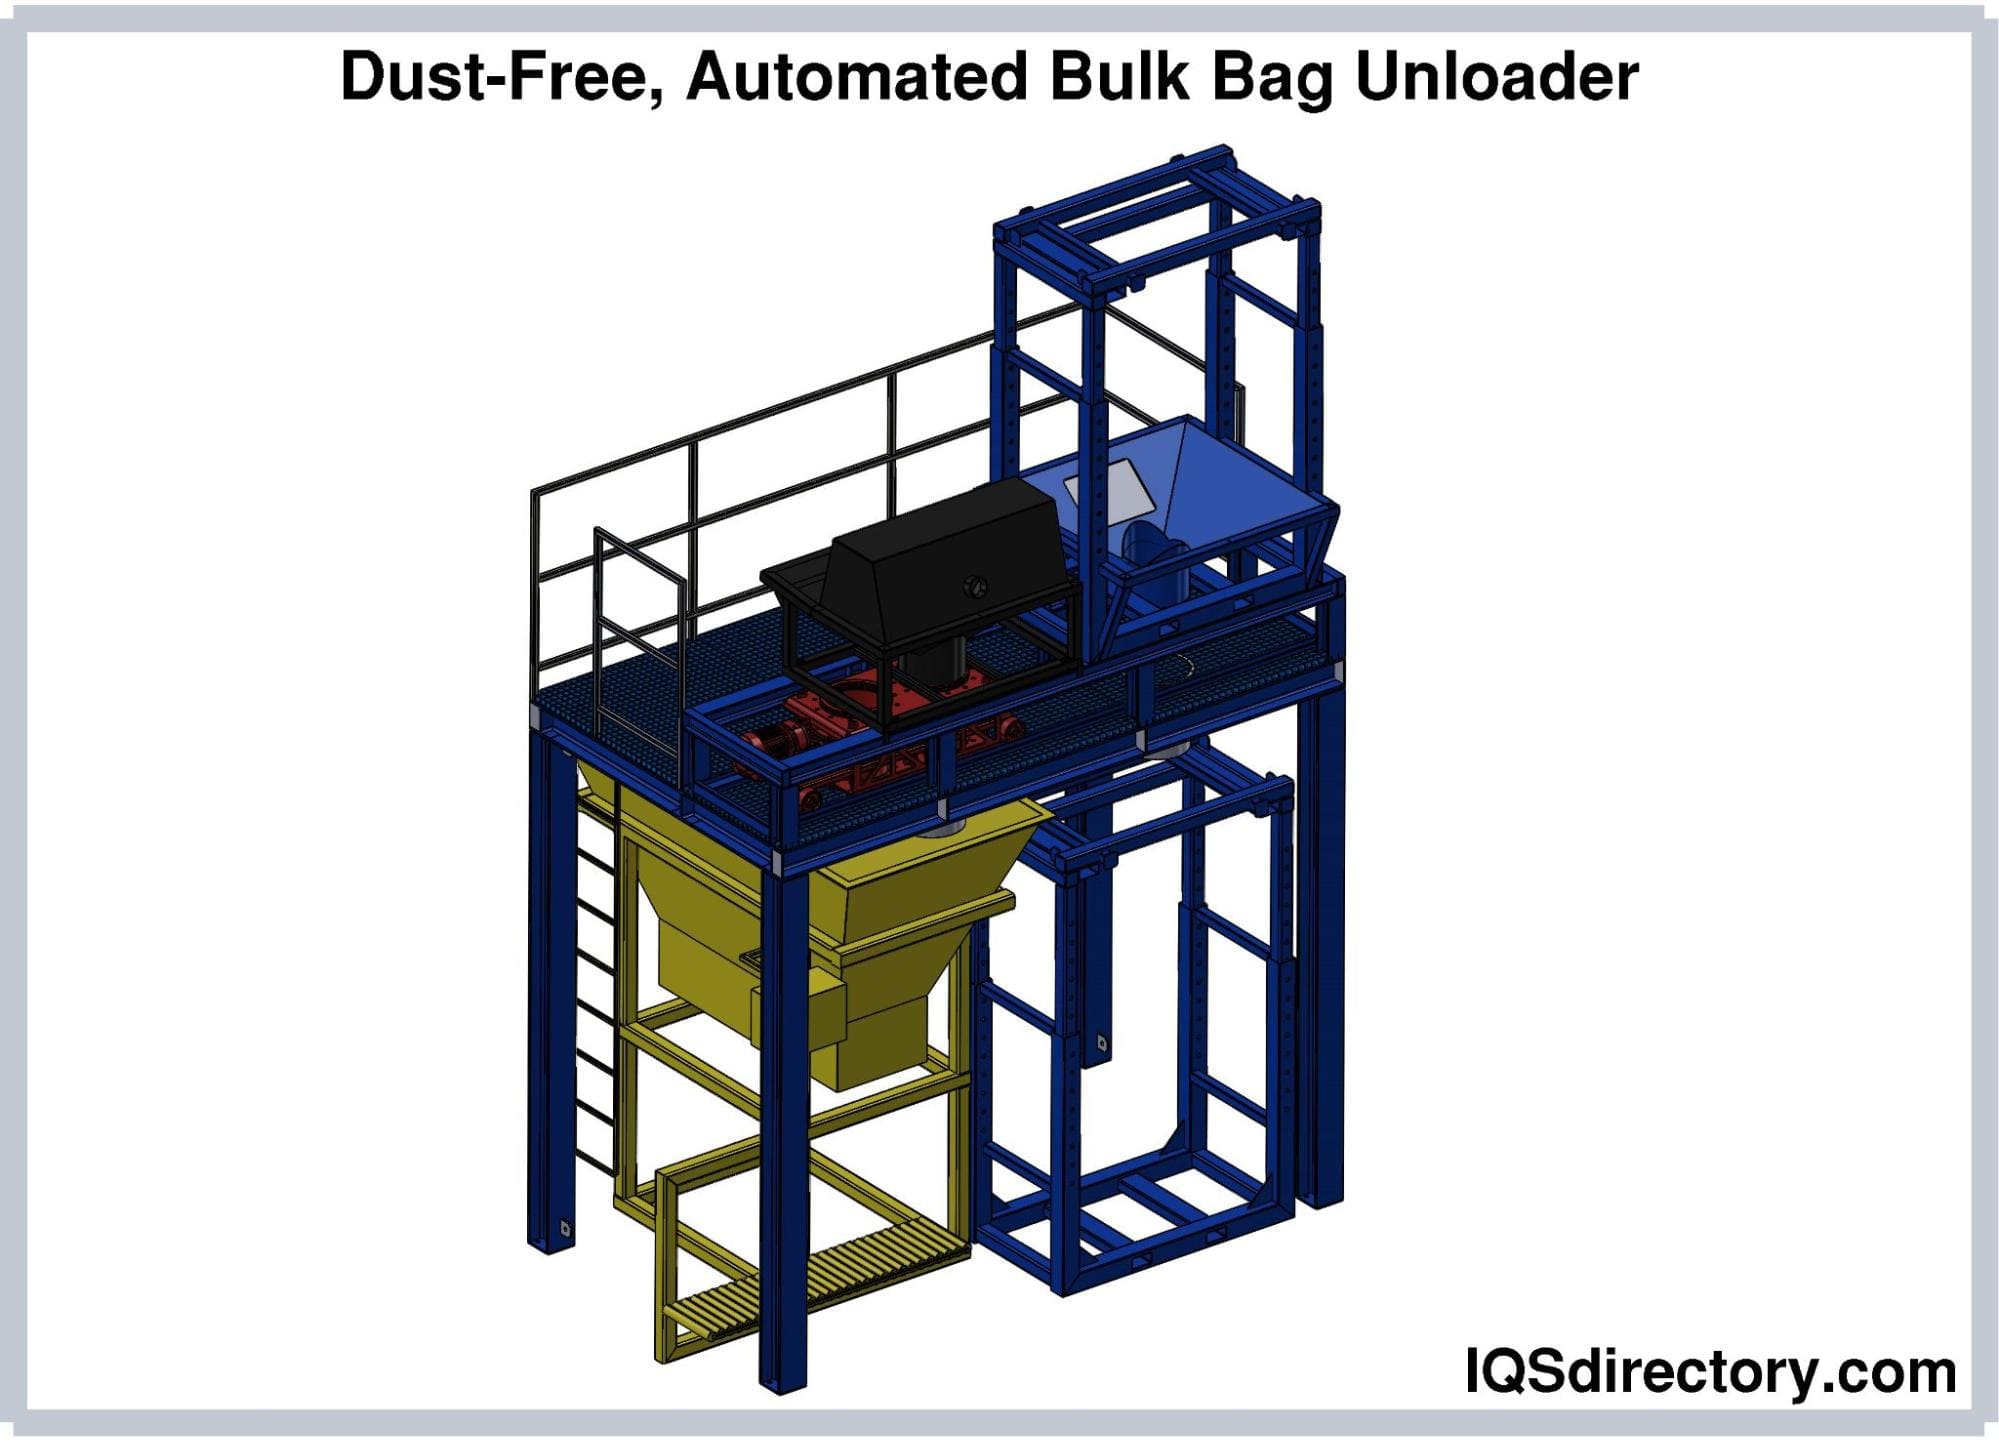 Massage-It™ Bulk Bag Unloader for Aluminum Oxide